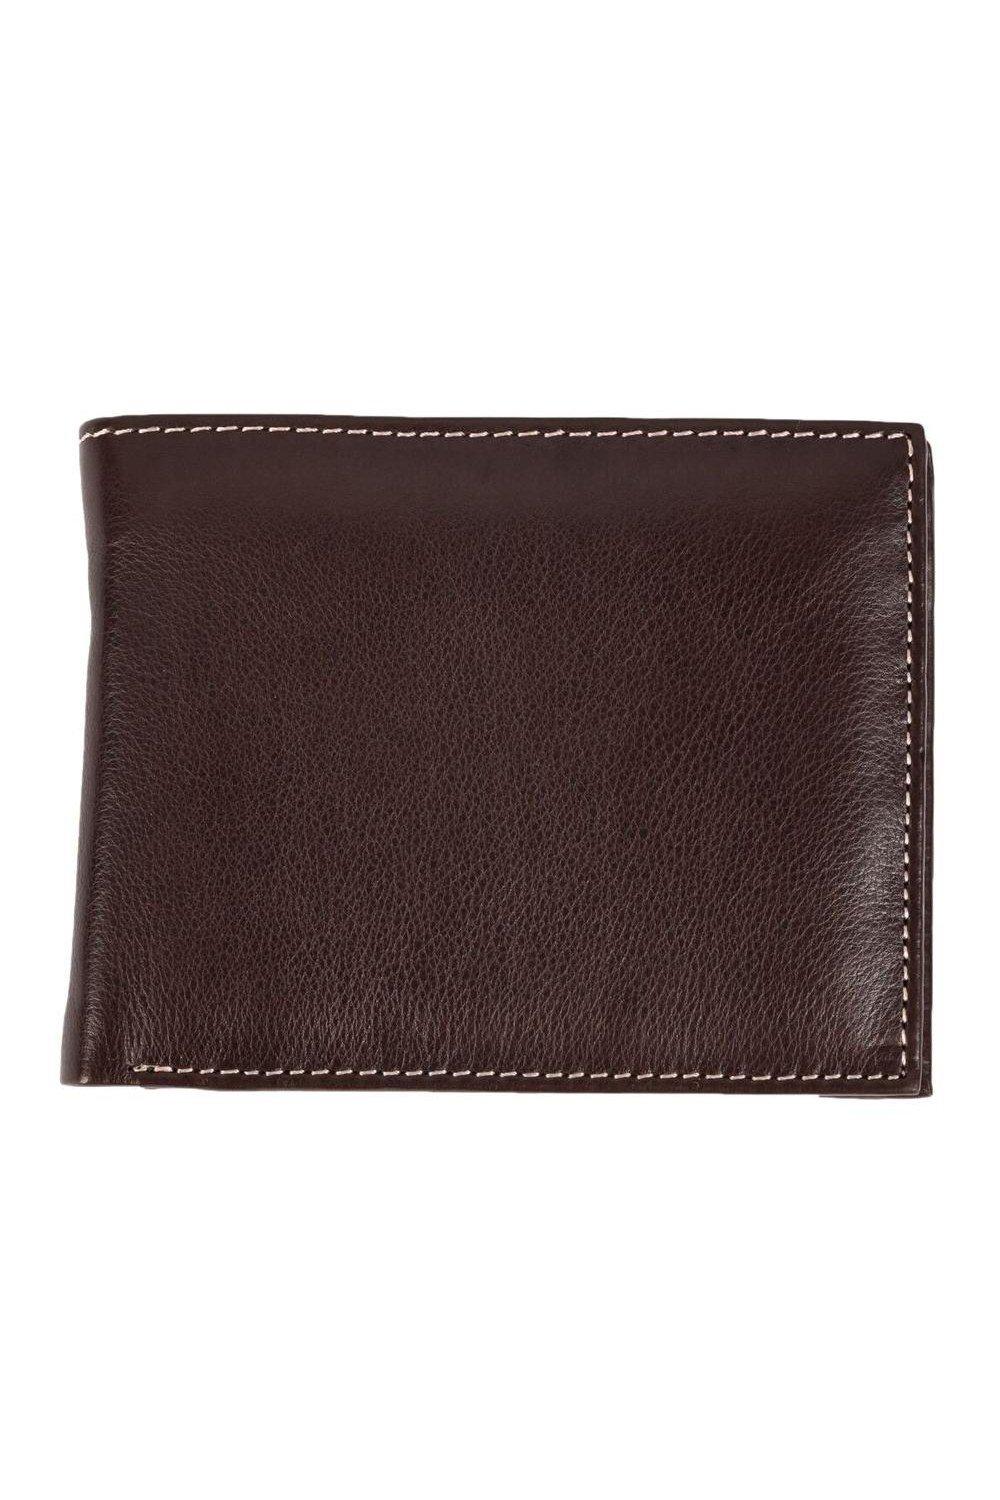 персонализированный кошелек для фотографии для женщин короткий кошелек тройного сложения из искусственной кожи женский кошелек в подаро Кошелек Mark Trifold с карманом для монет Eastern Counties Leather, коричневый